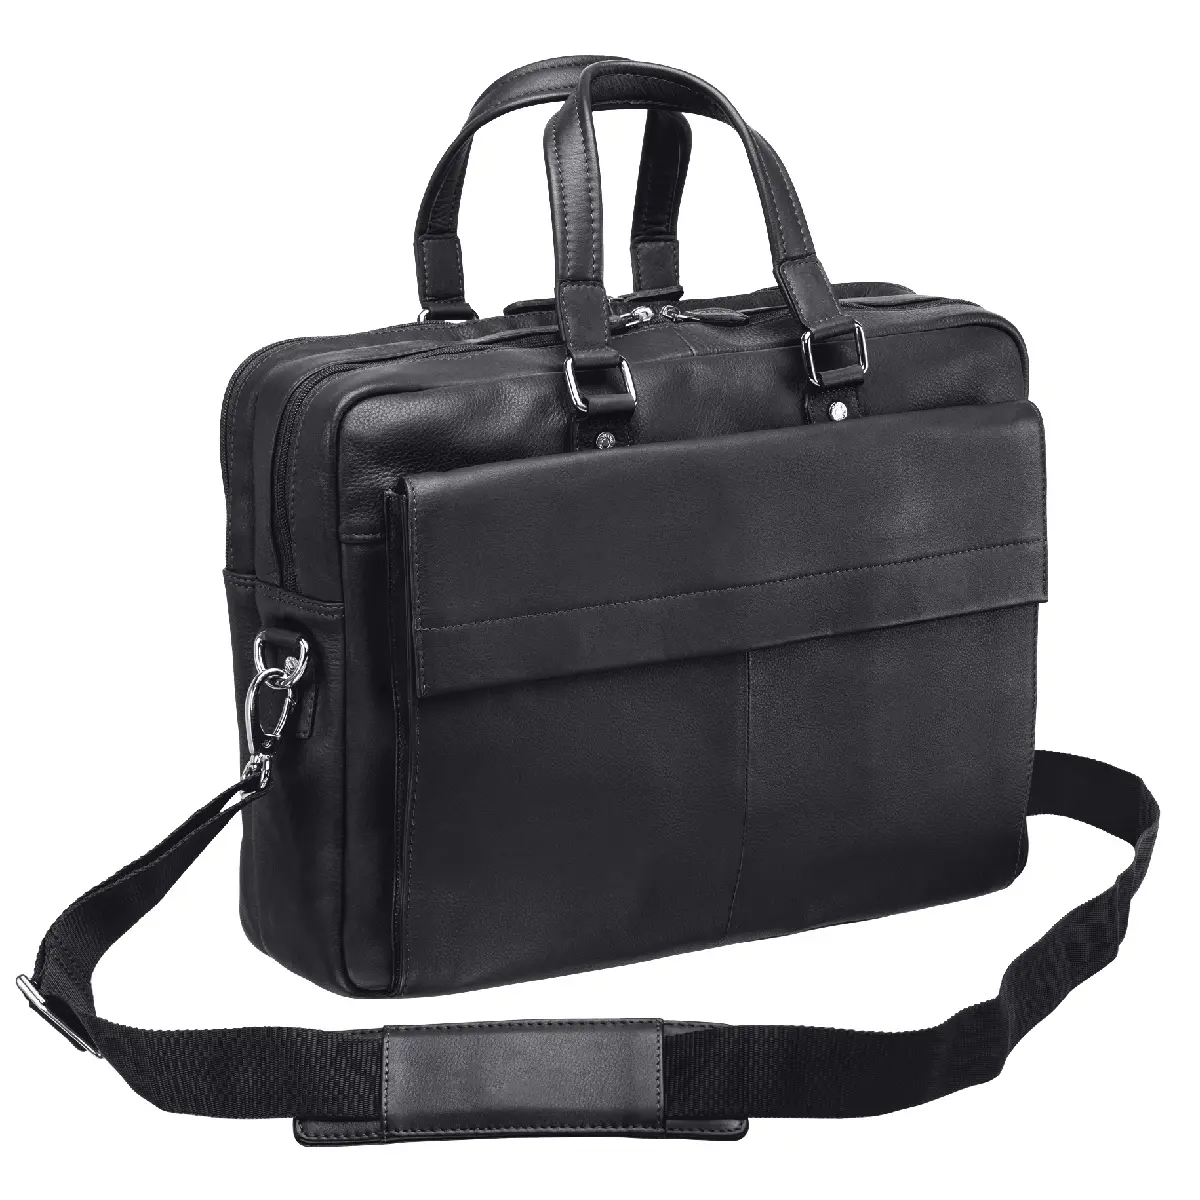 Yeni tasarım sıcak satış düz renk deri Laptop çantaları/OEM hizmetleri en trend özel dayanıklı dizüstü deri çanta